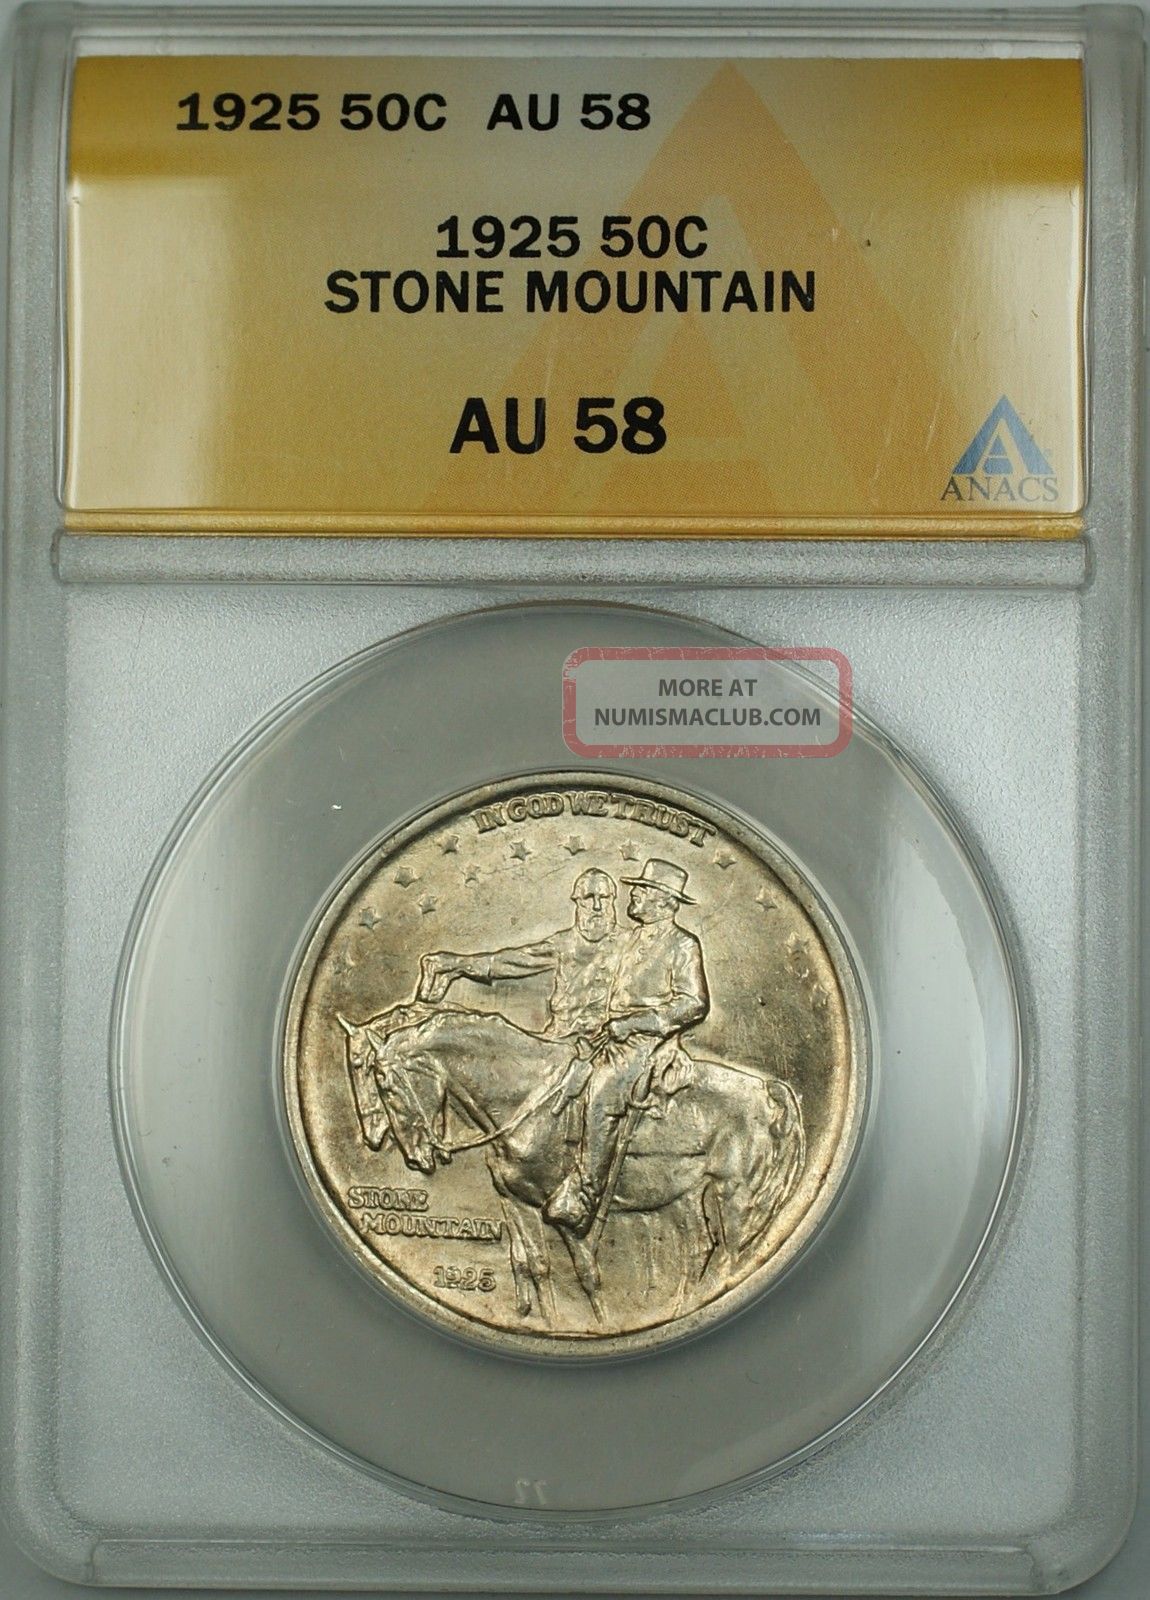 アンティークコイン 銀貨 1878-S Morgan Silver Dollar $1 Coin ANACS